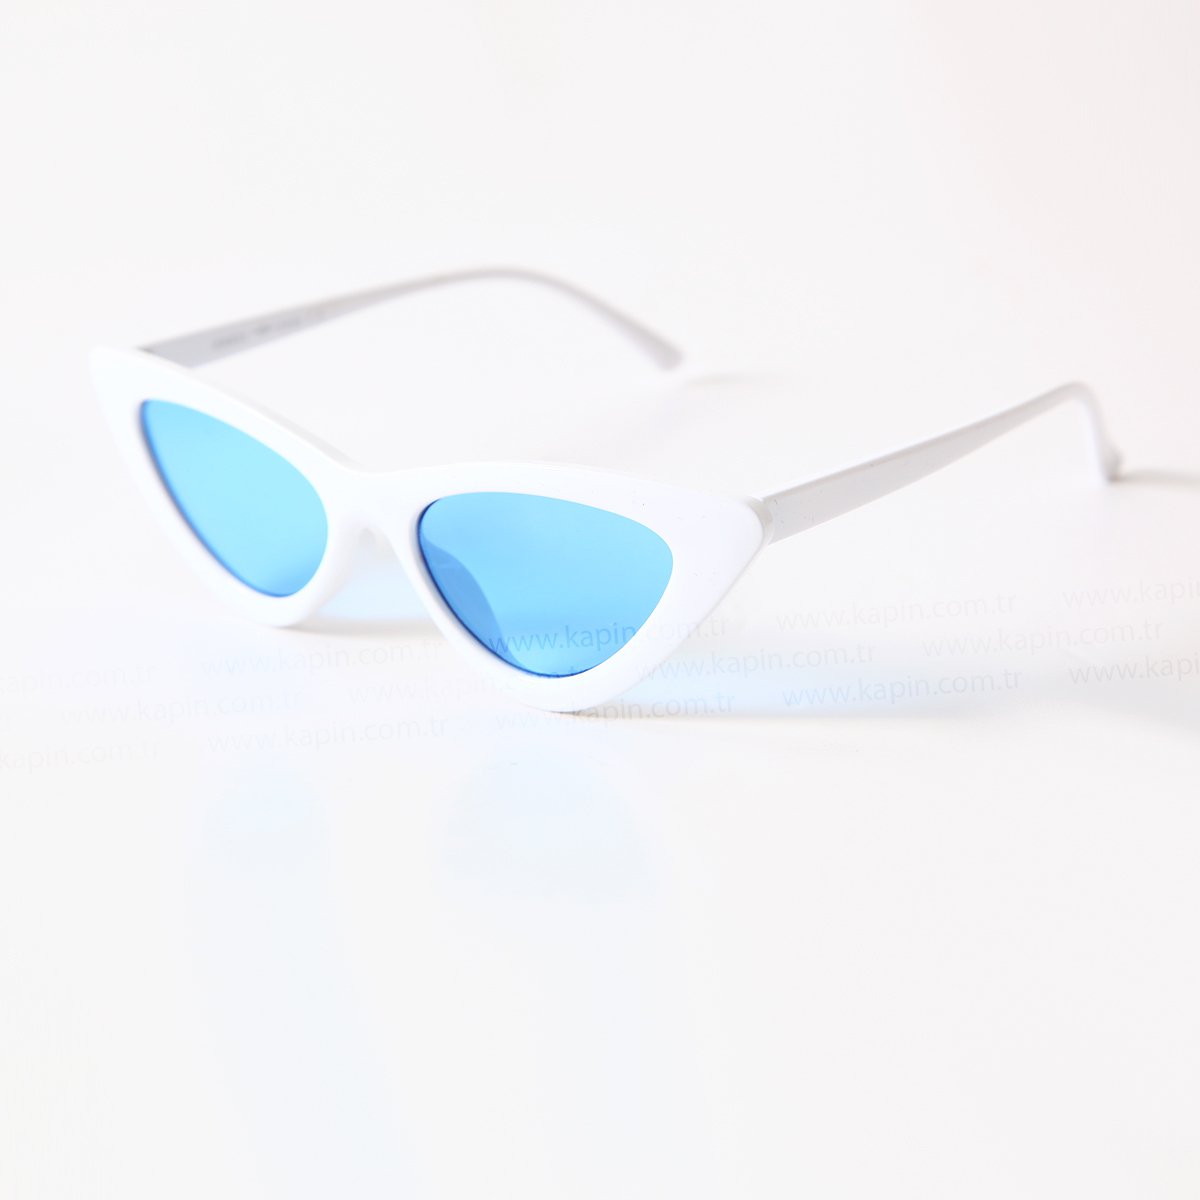 Kapin Kedi Model Güneş Gözlüğü Mavi Şeffaf Cam Güneş Gözlüğü İmaj